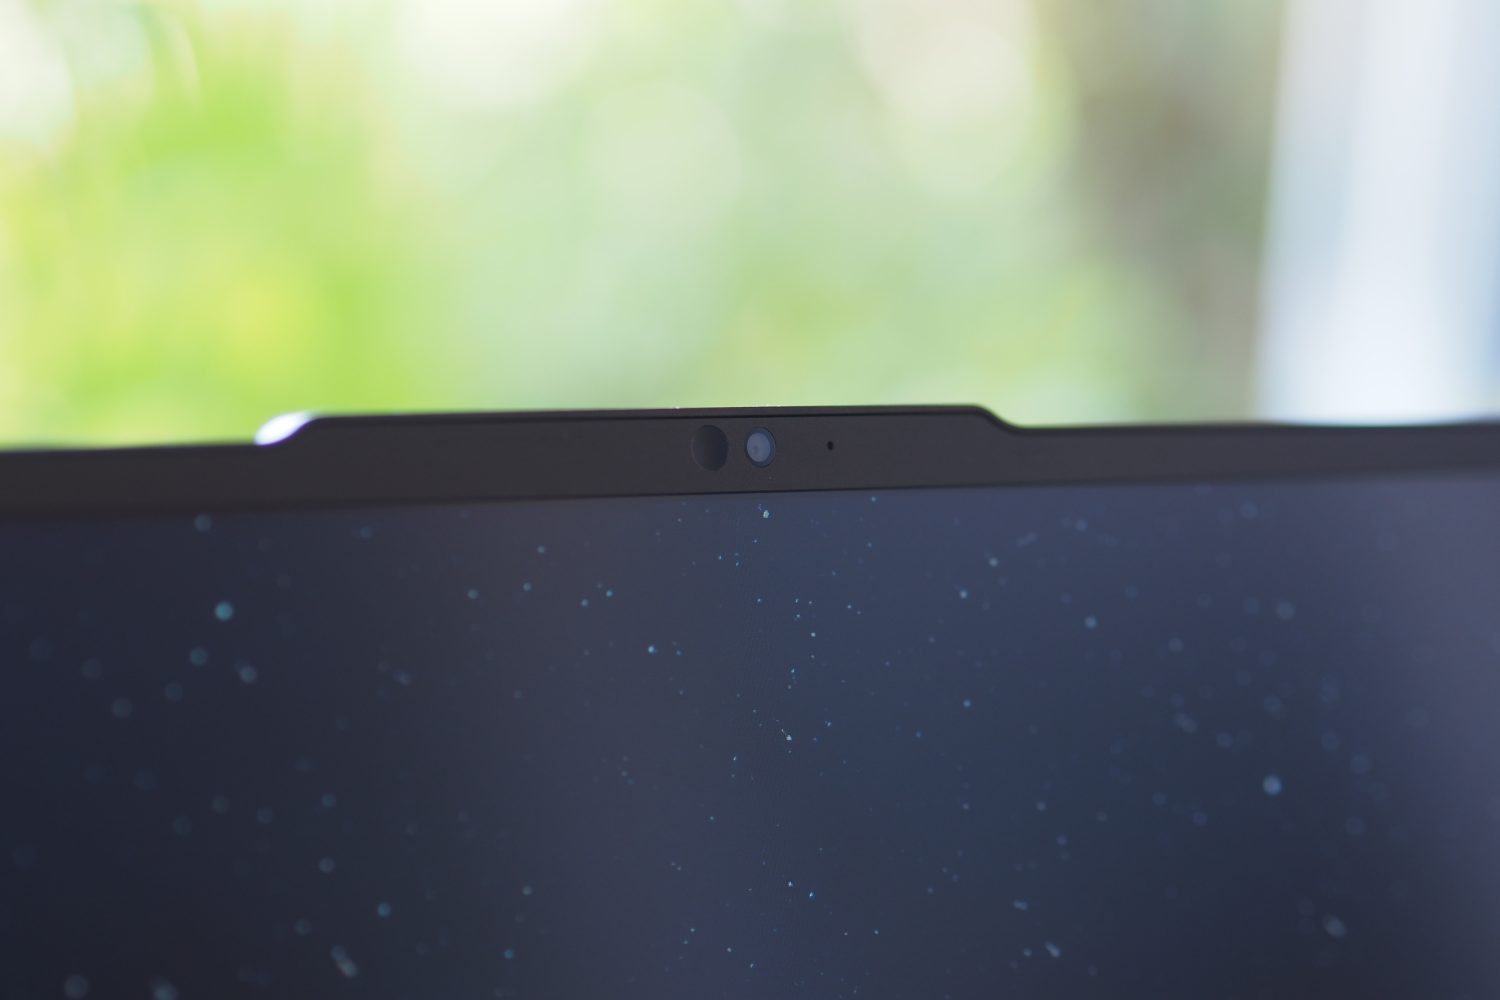 Vista frontal do Lenovo ThinkPad Z16 mostrando a webcam.